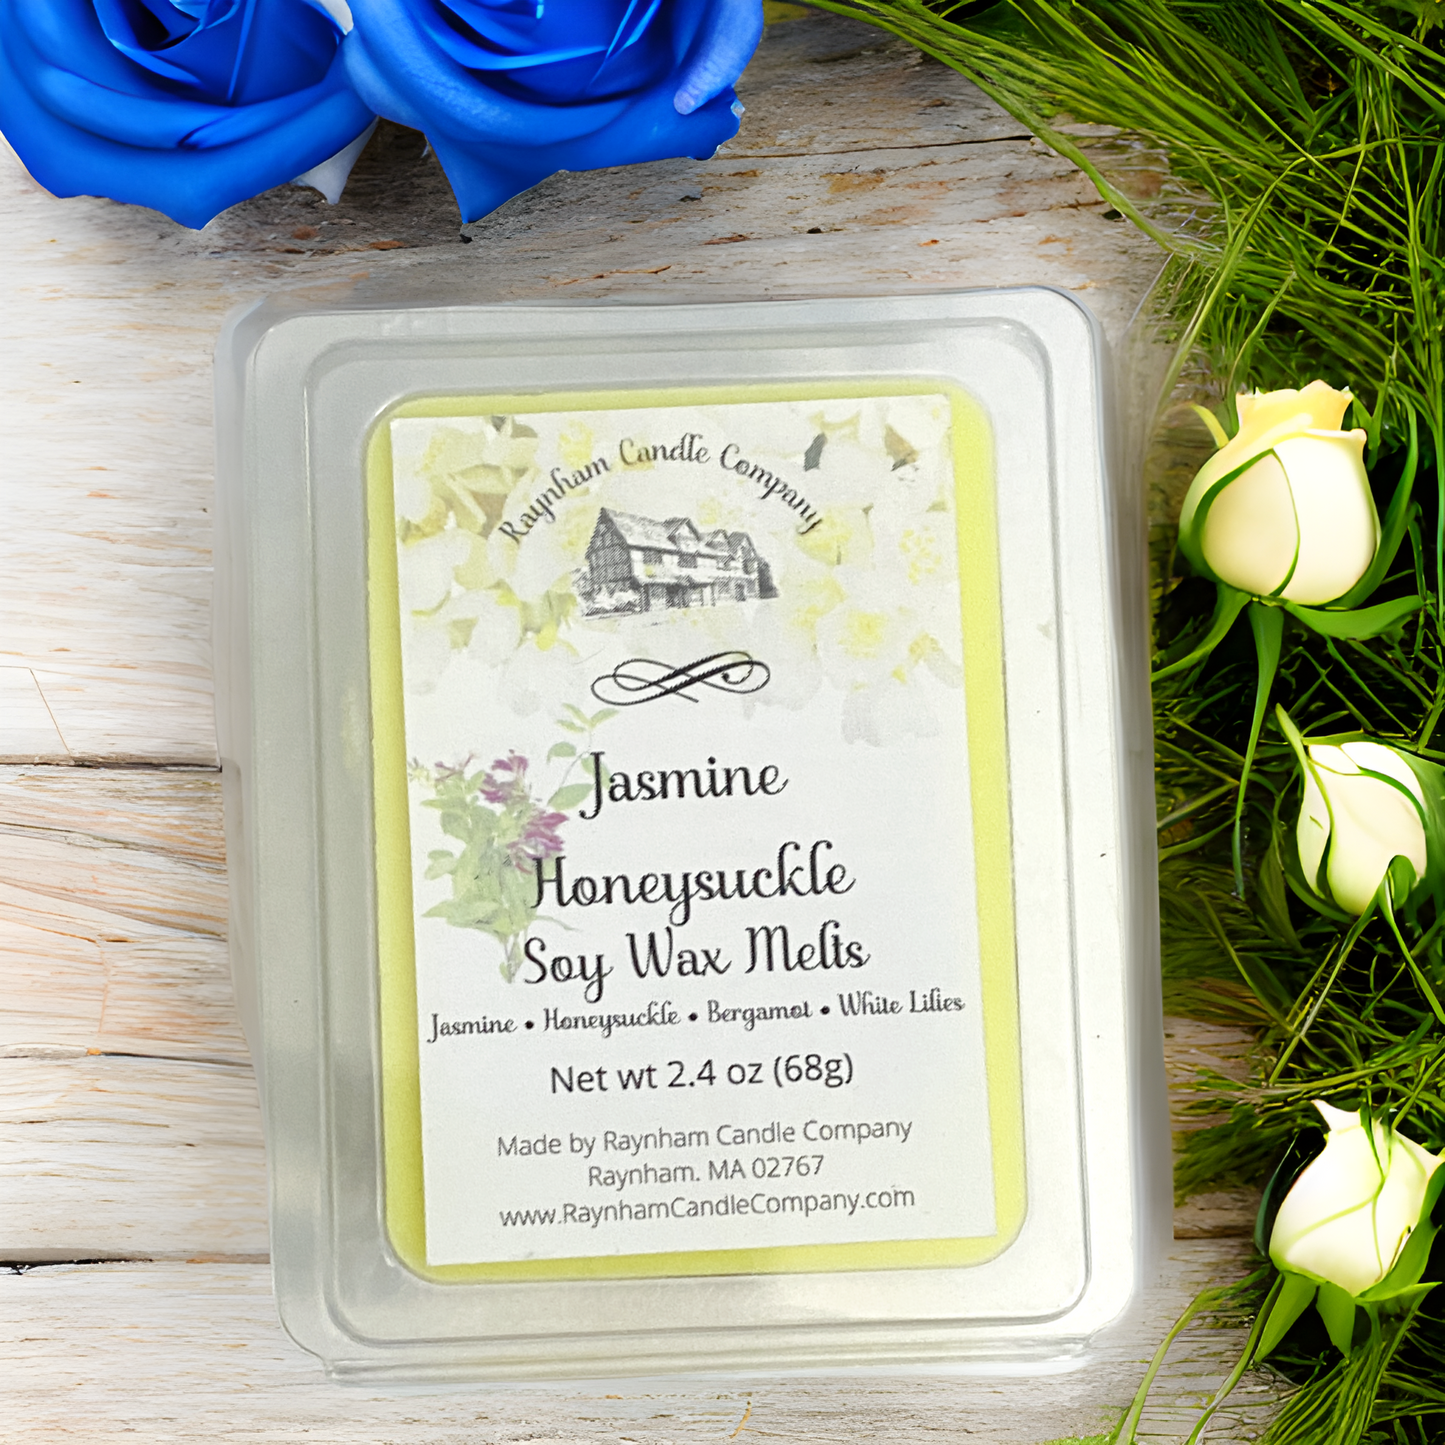 Jasmine Honeysuckle - Premium  from Raynham Candle Company  - Just $5.00! Shop now at Raynham Candle Company 